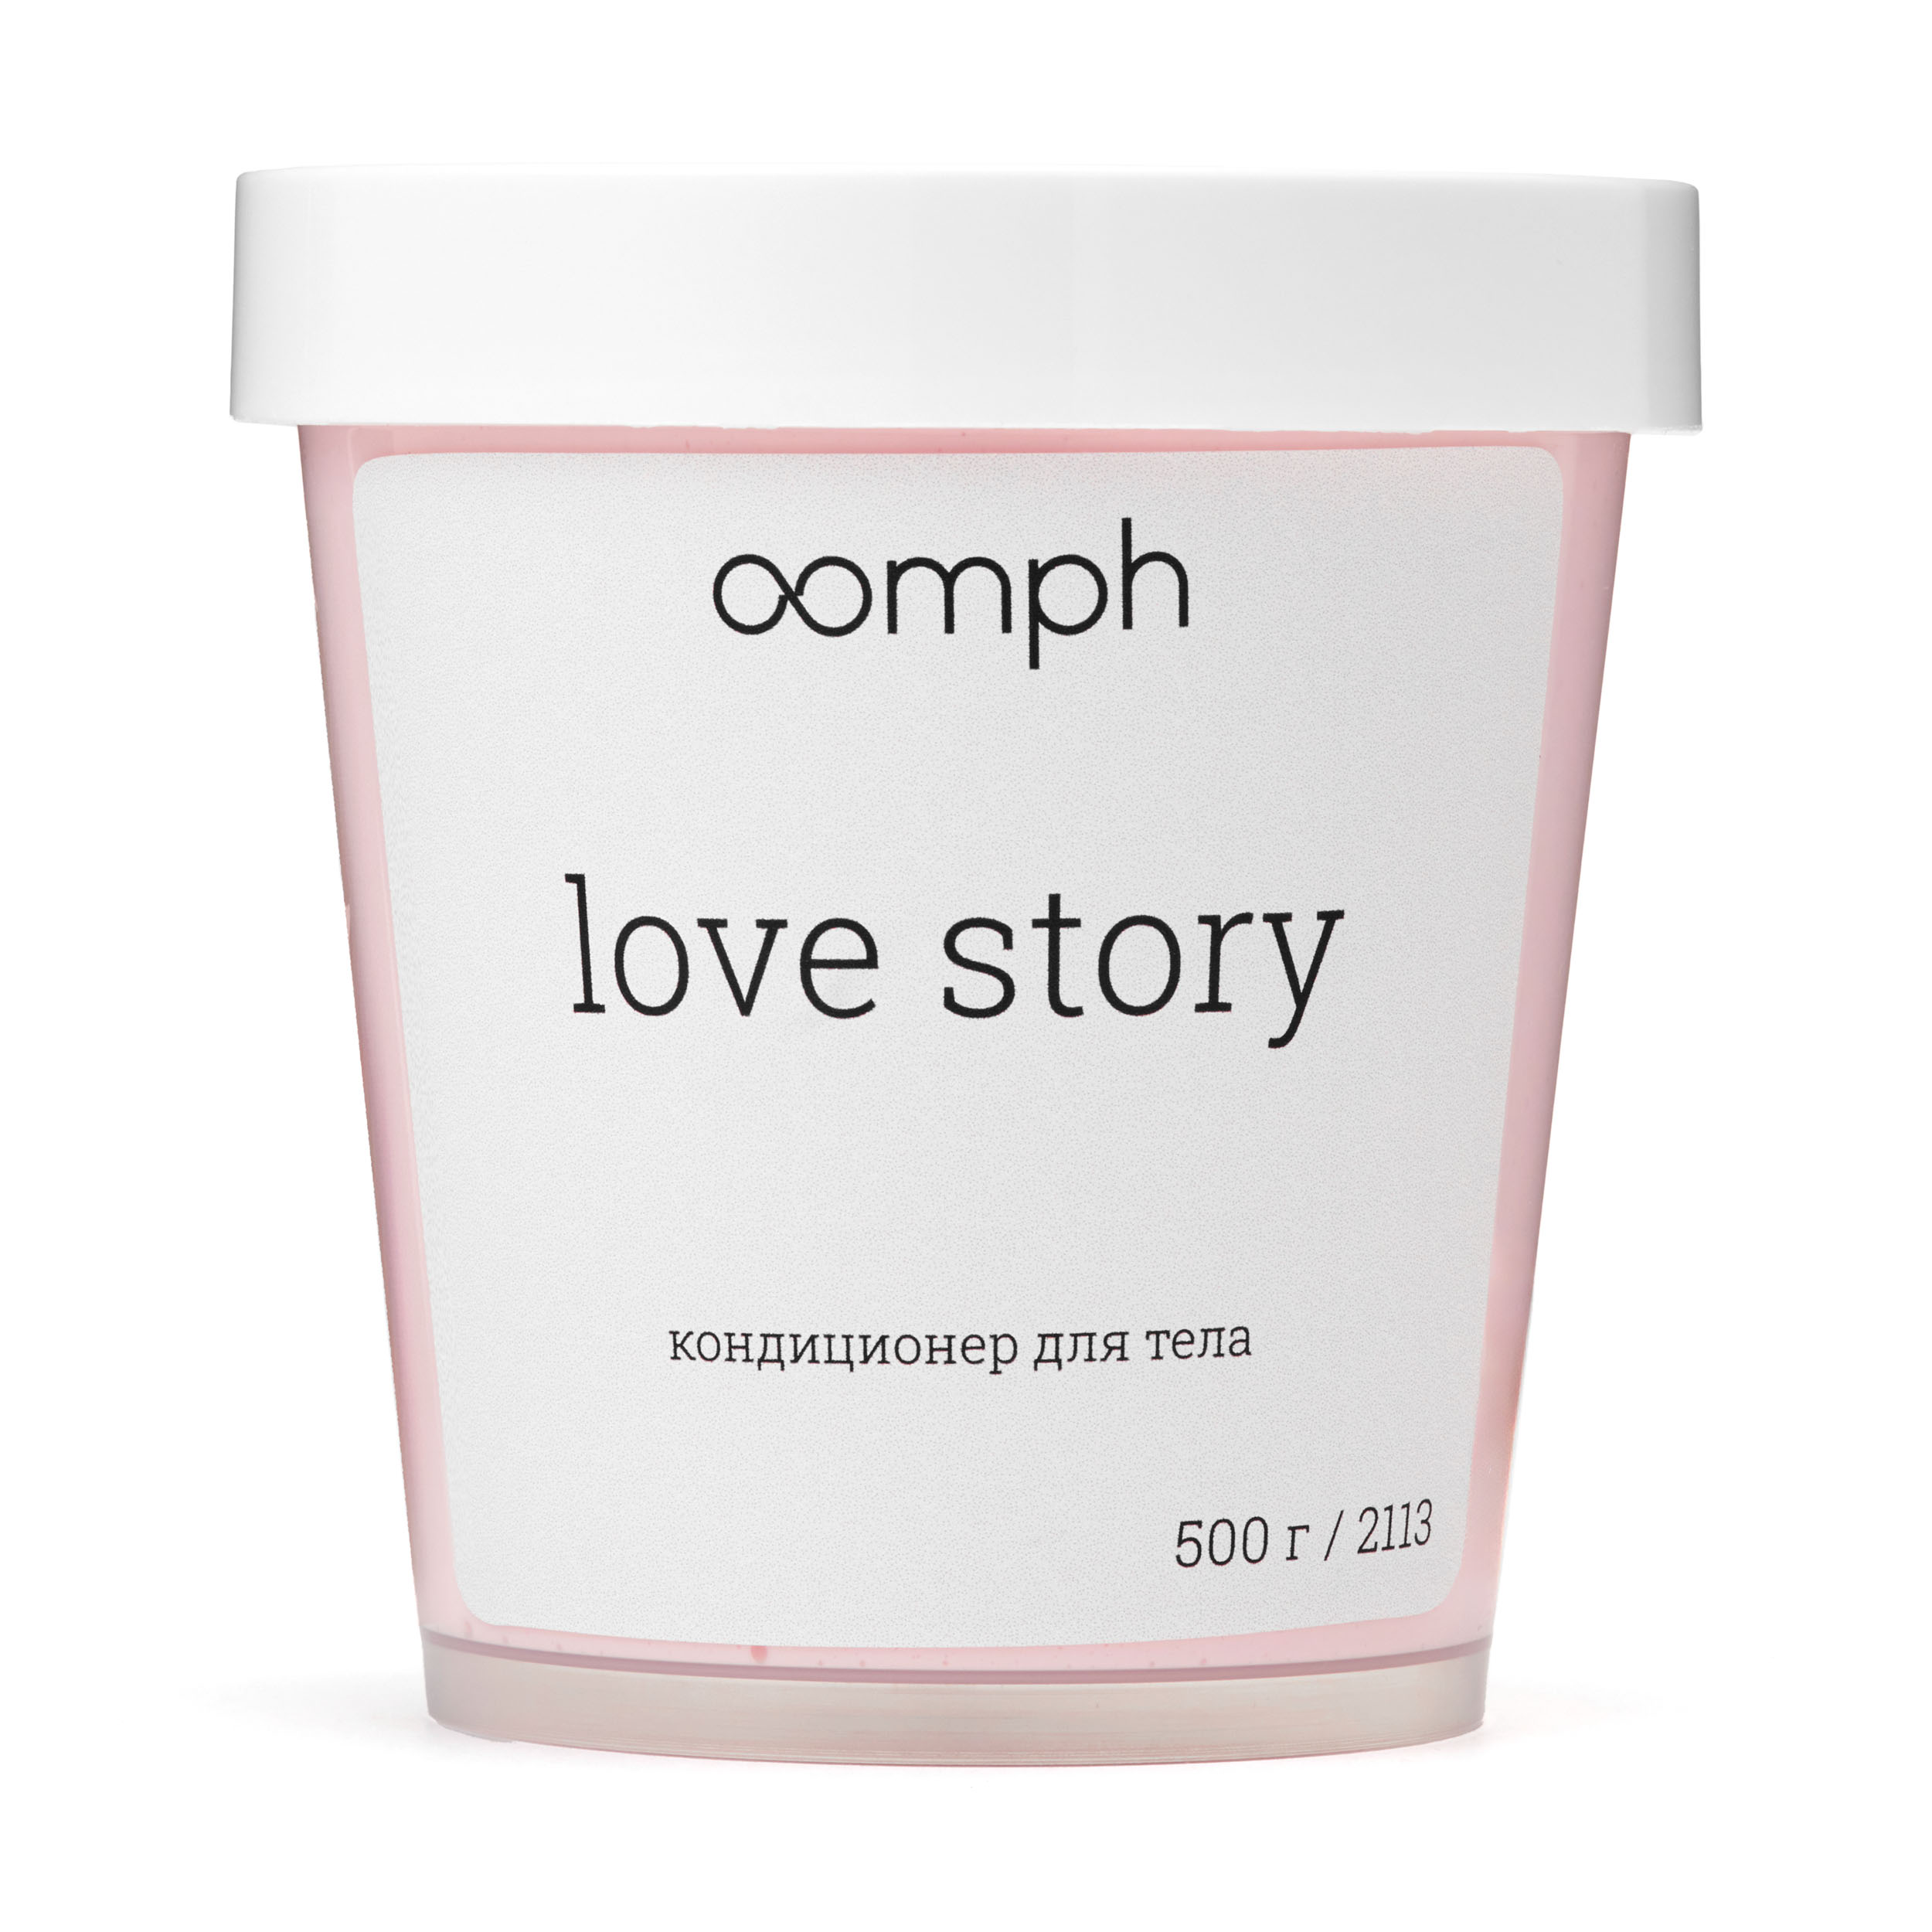 Кондиционер для тела OOMPH Love story 500г ромео и джульетта отелло